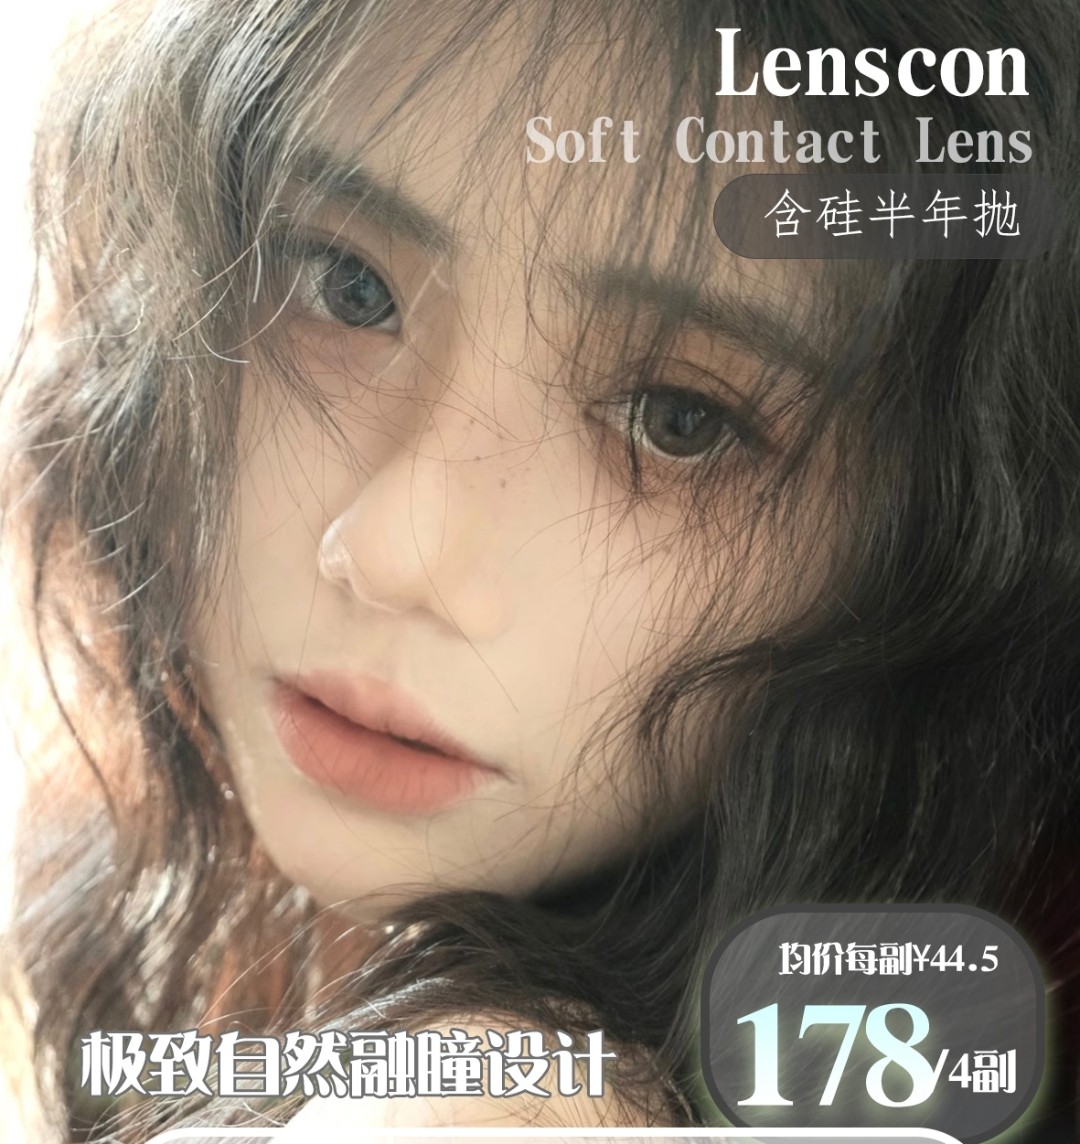 【新品牌】Lenscon 极致自然融瞳设计 新品牌上市